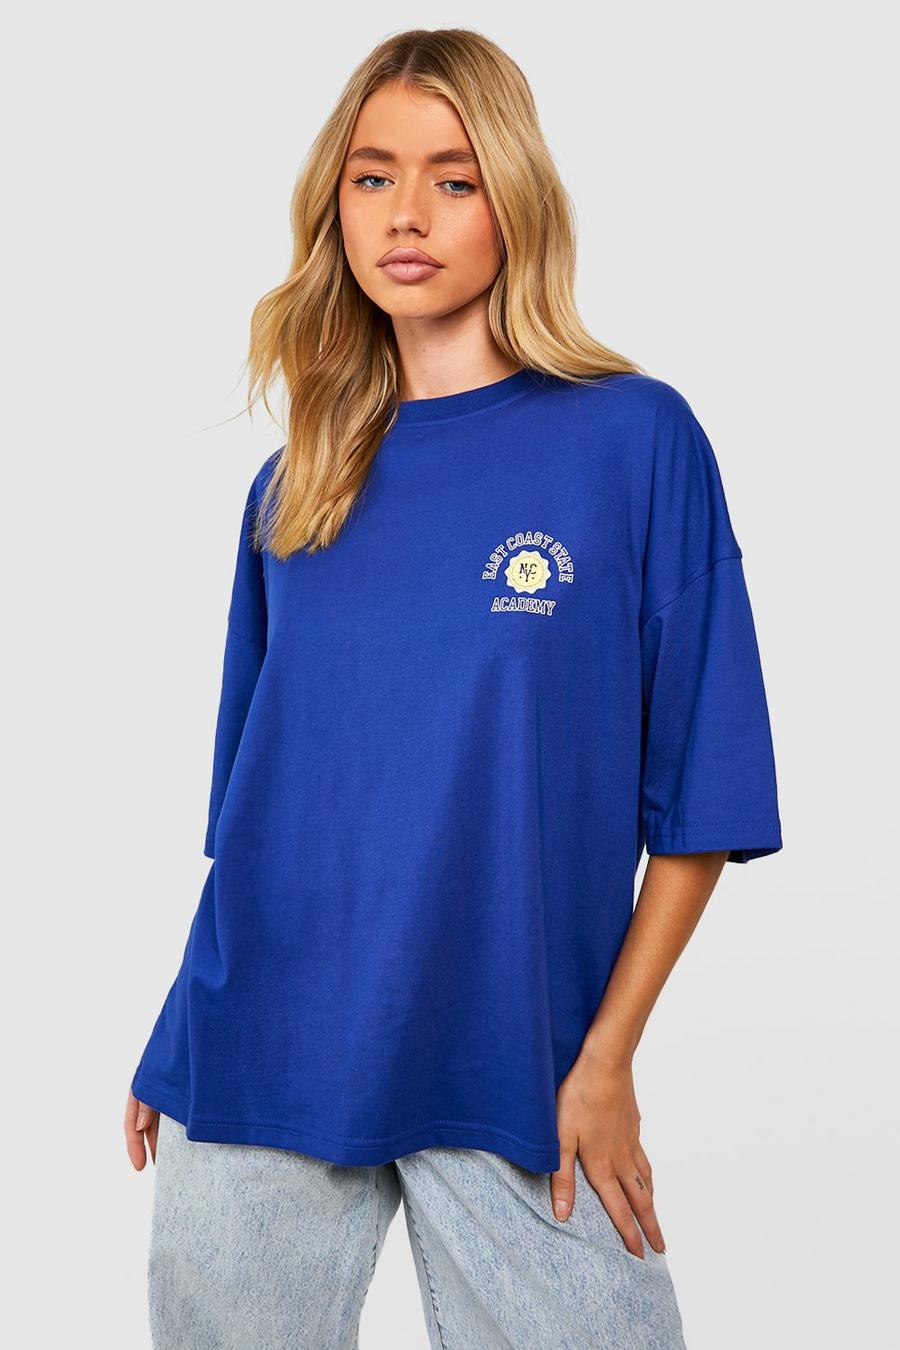 T-shirt con slogan East Coast, Cobalt azzurro